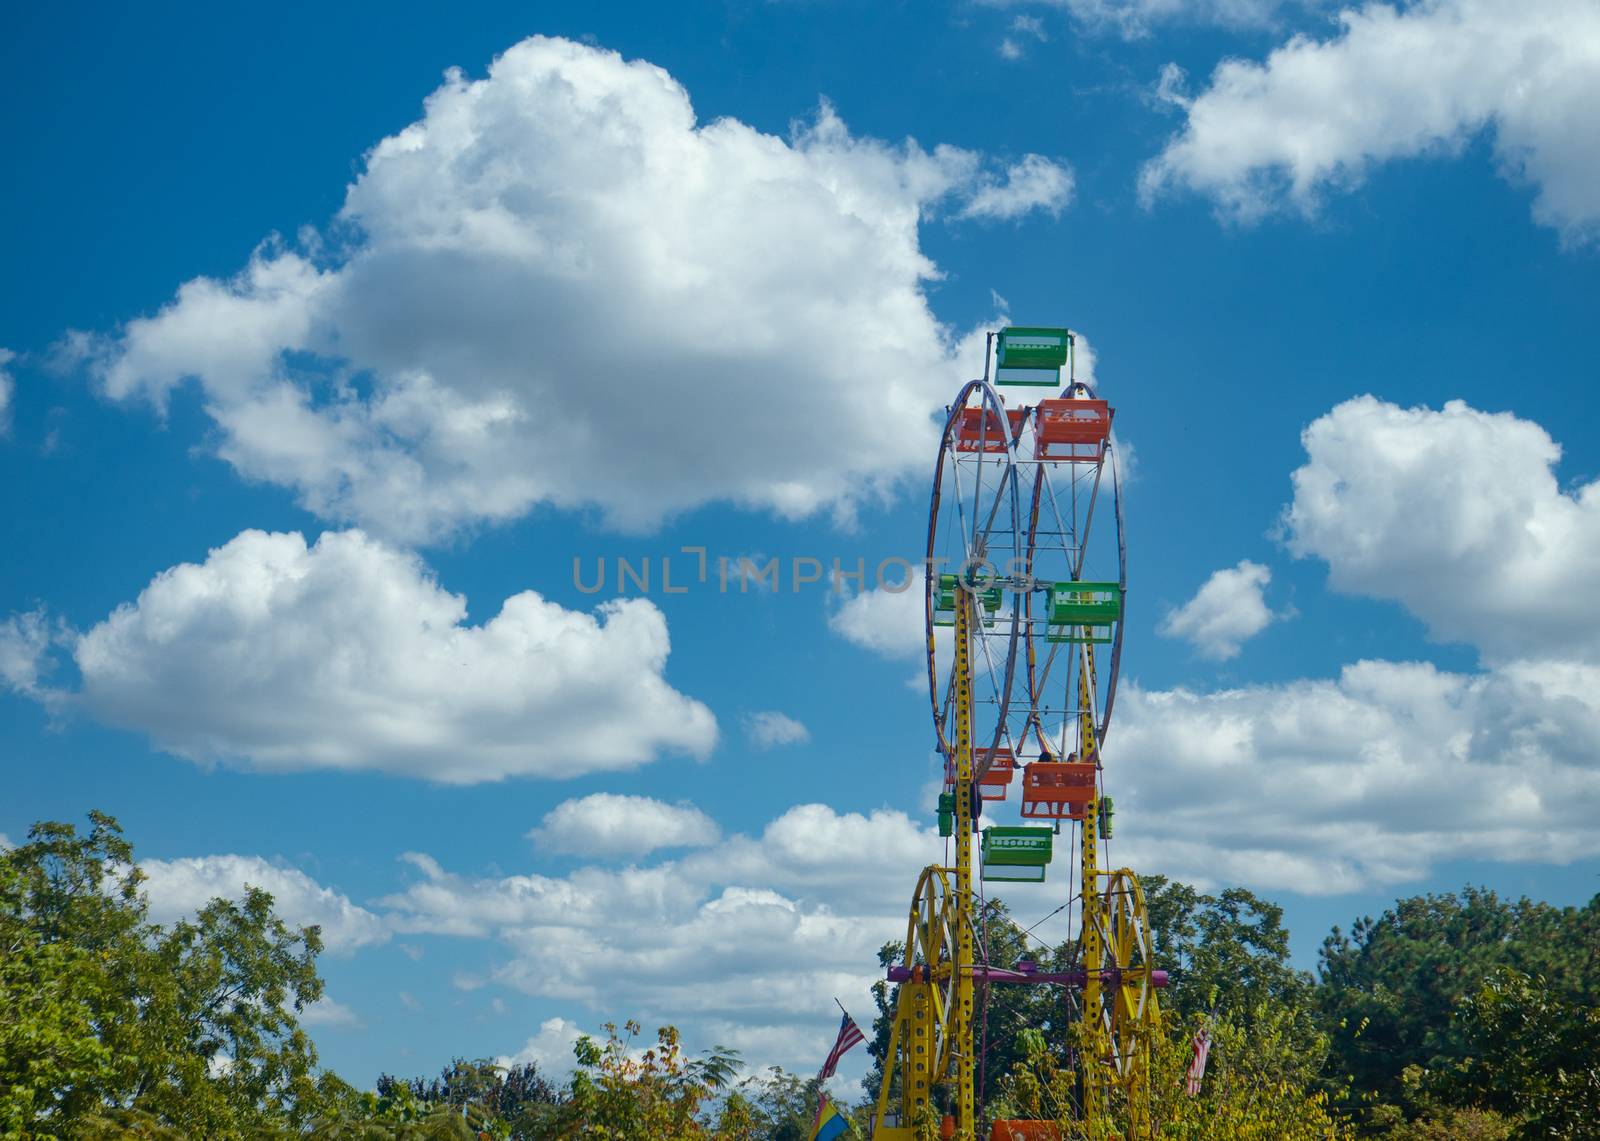 A colorful ferris wheel at a fair against a blue sky